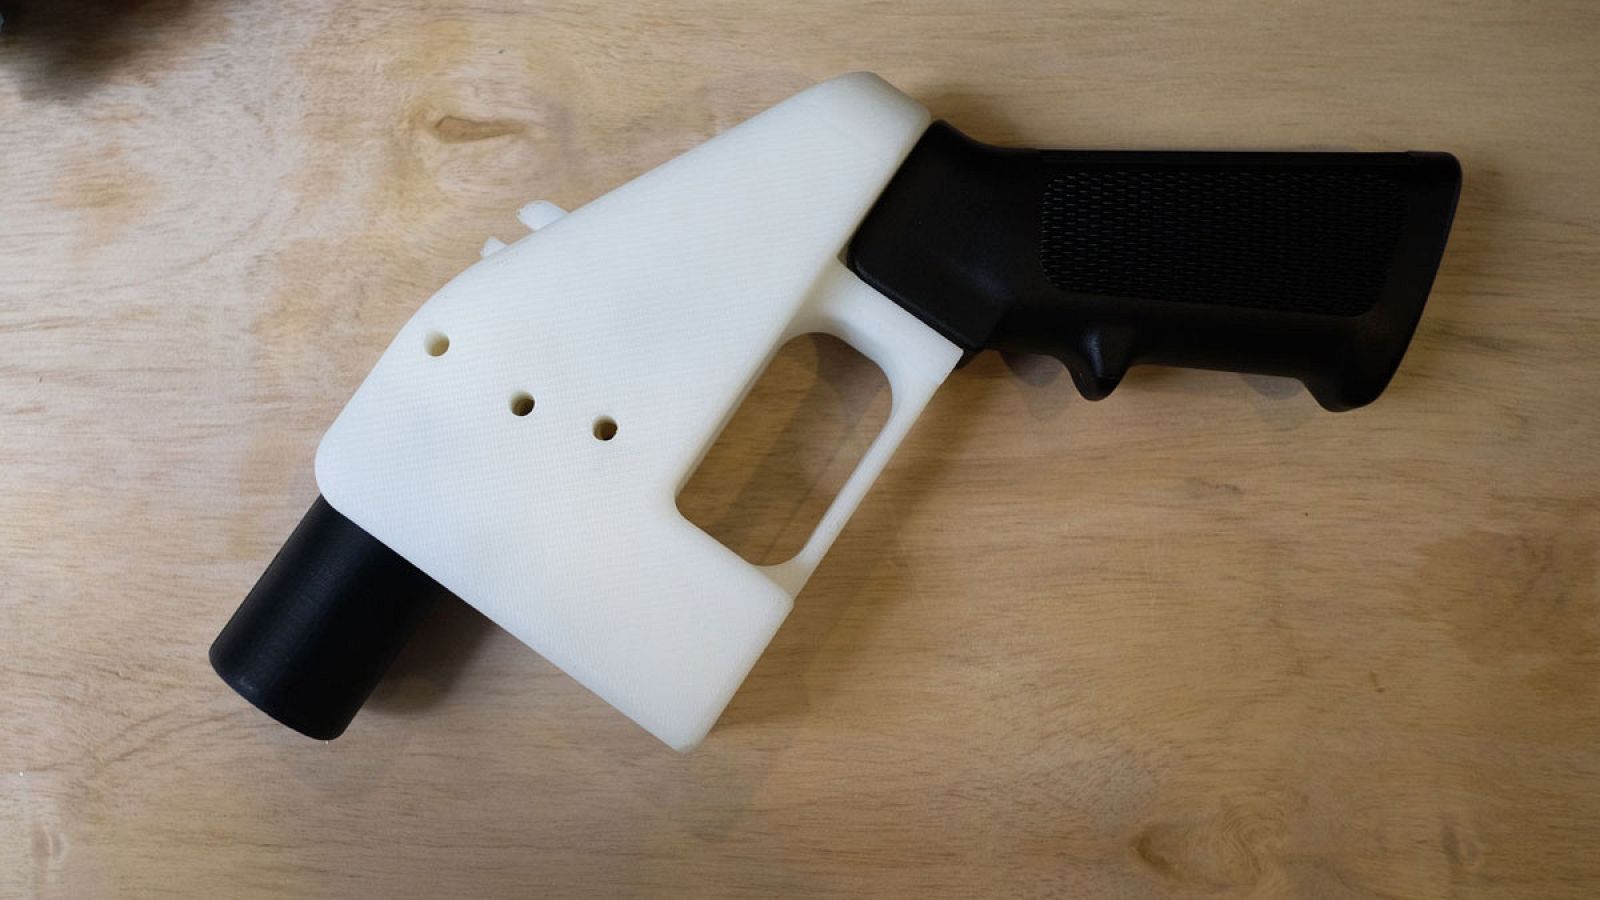 pistola fabricada con una impresora en 3D